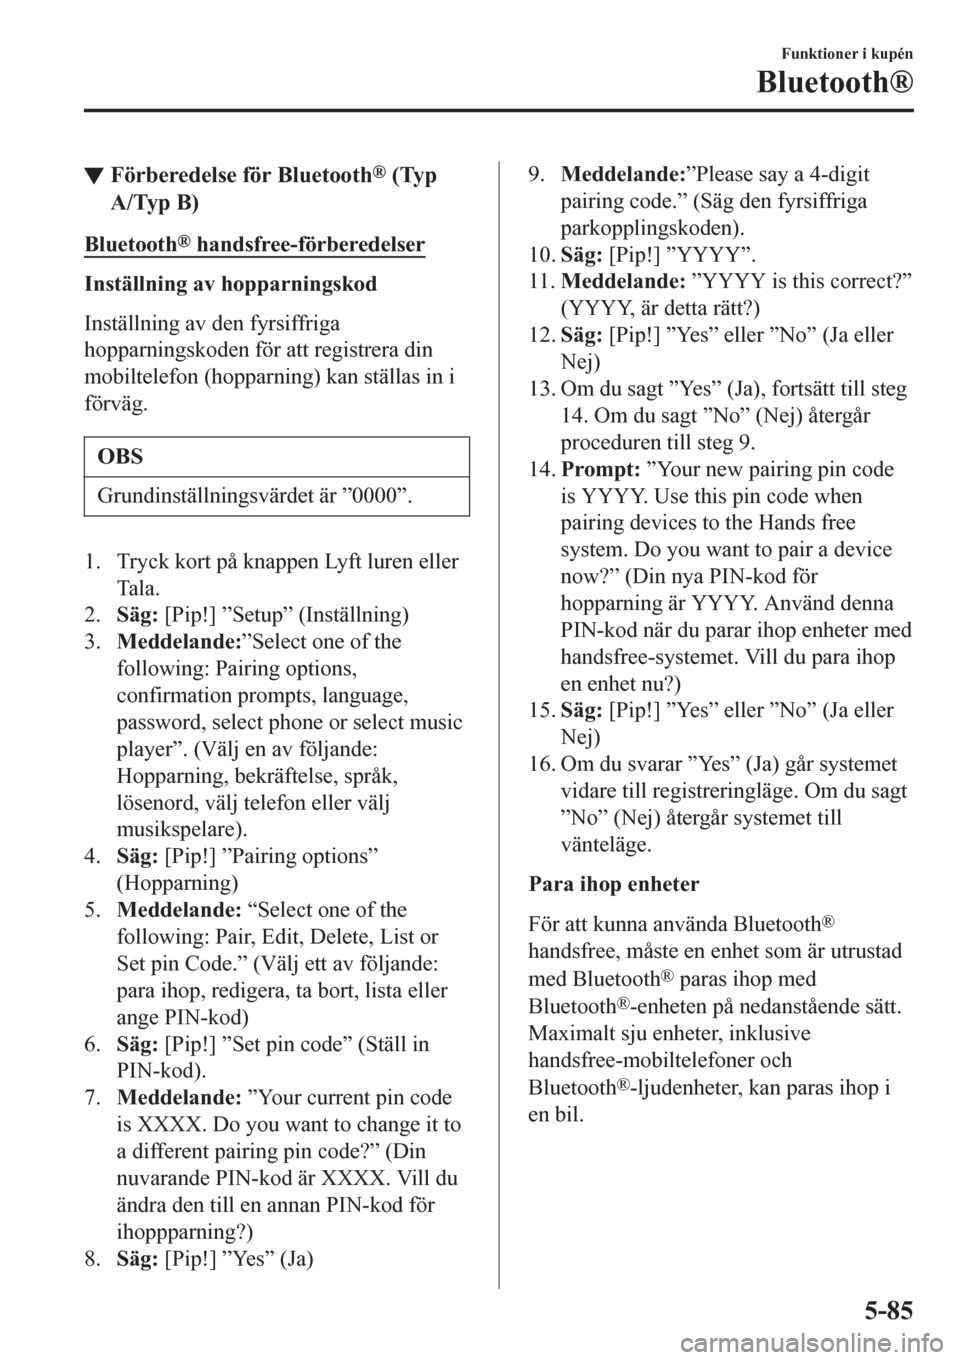 MAZDA MODEL CX-3 2016  Ägarmanual (in Swedish) ▼Förberedelse för Bluetooth® (Typ
A/Typ B)
Bluetooth® handsfree-förberedelser
Inställning av hopparningskod
Inställning av den fyrsiffriga
hopparningskoden för att registrera din
mobiltelefo